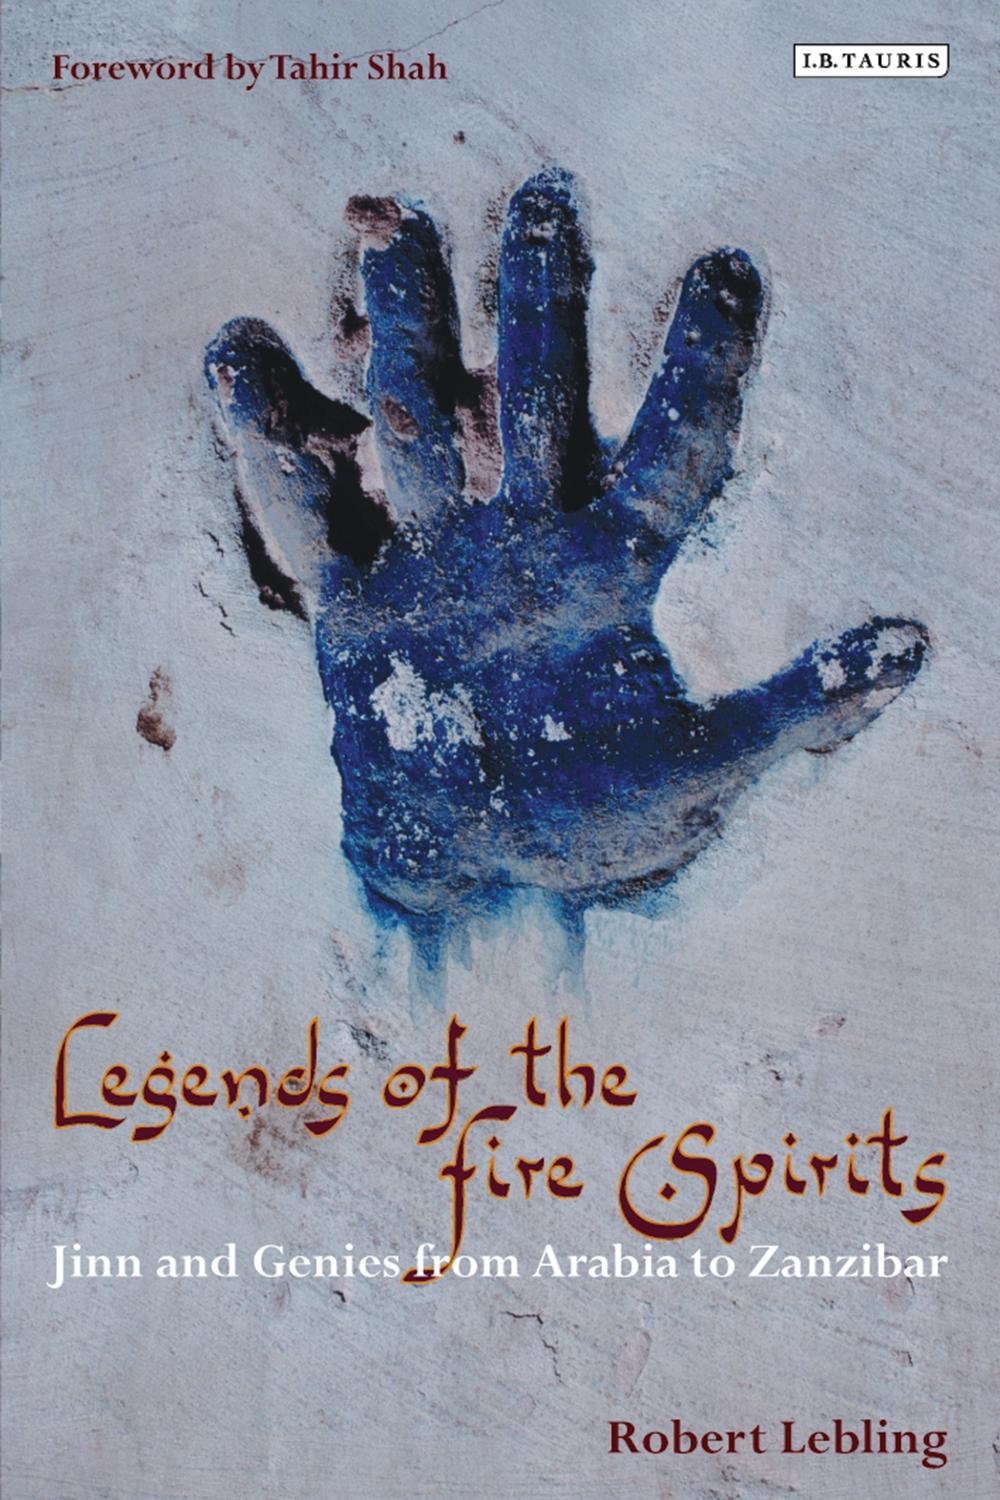 Legends of the Fire Spirits - Robert Lebling